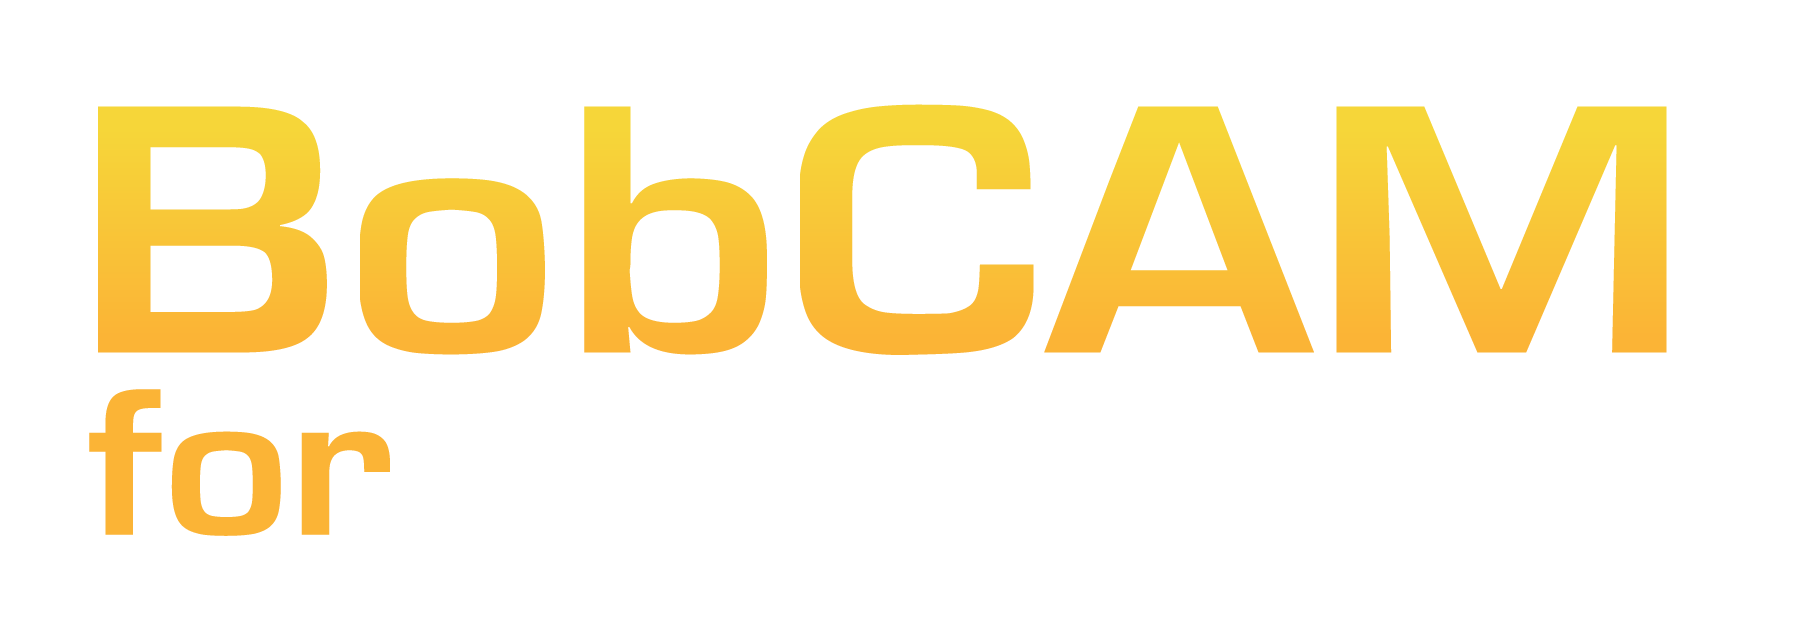 bobcam for solidworks download